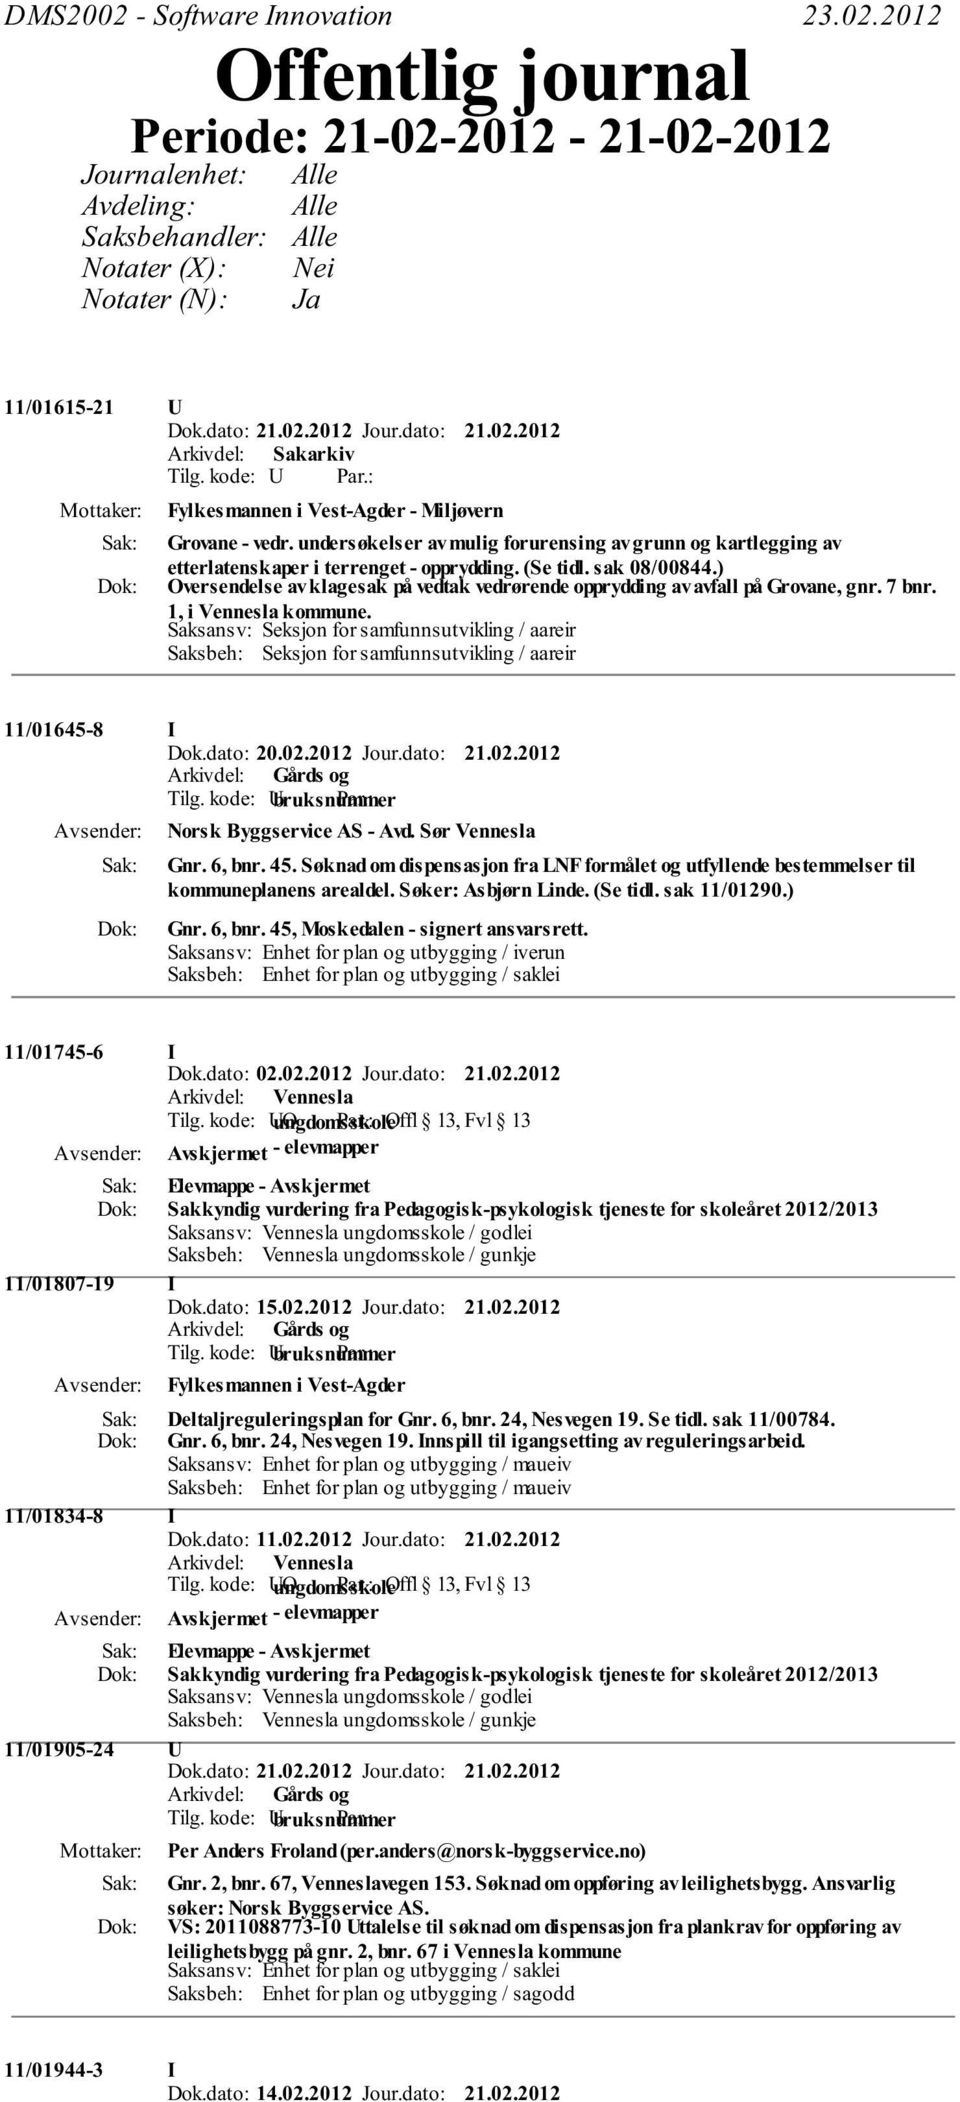 2012 Offentlig journal Periode: 21-02-2012-21-02-2012 Journalenhet: Avdeling: Saksbehandler: Notater (X): Notater (N): Alle Alle Alle Nei Ja 11/01615-21 Fylkesmannen i Vest-Agder - Miljøvern Grovane